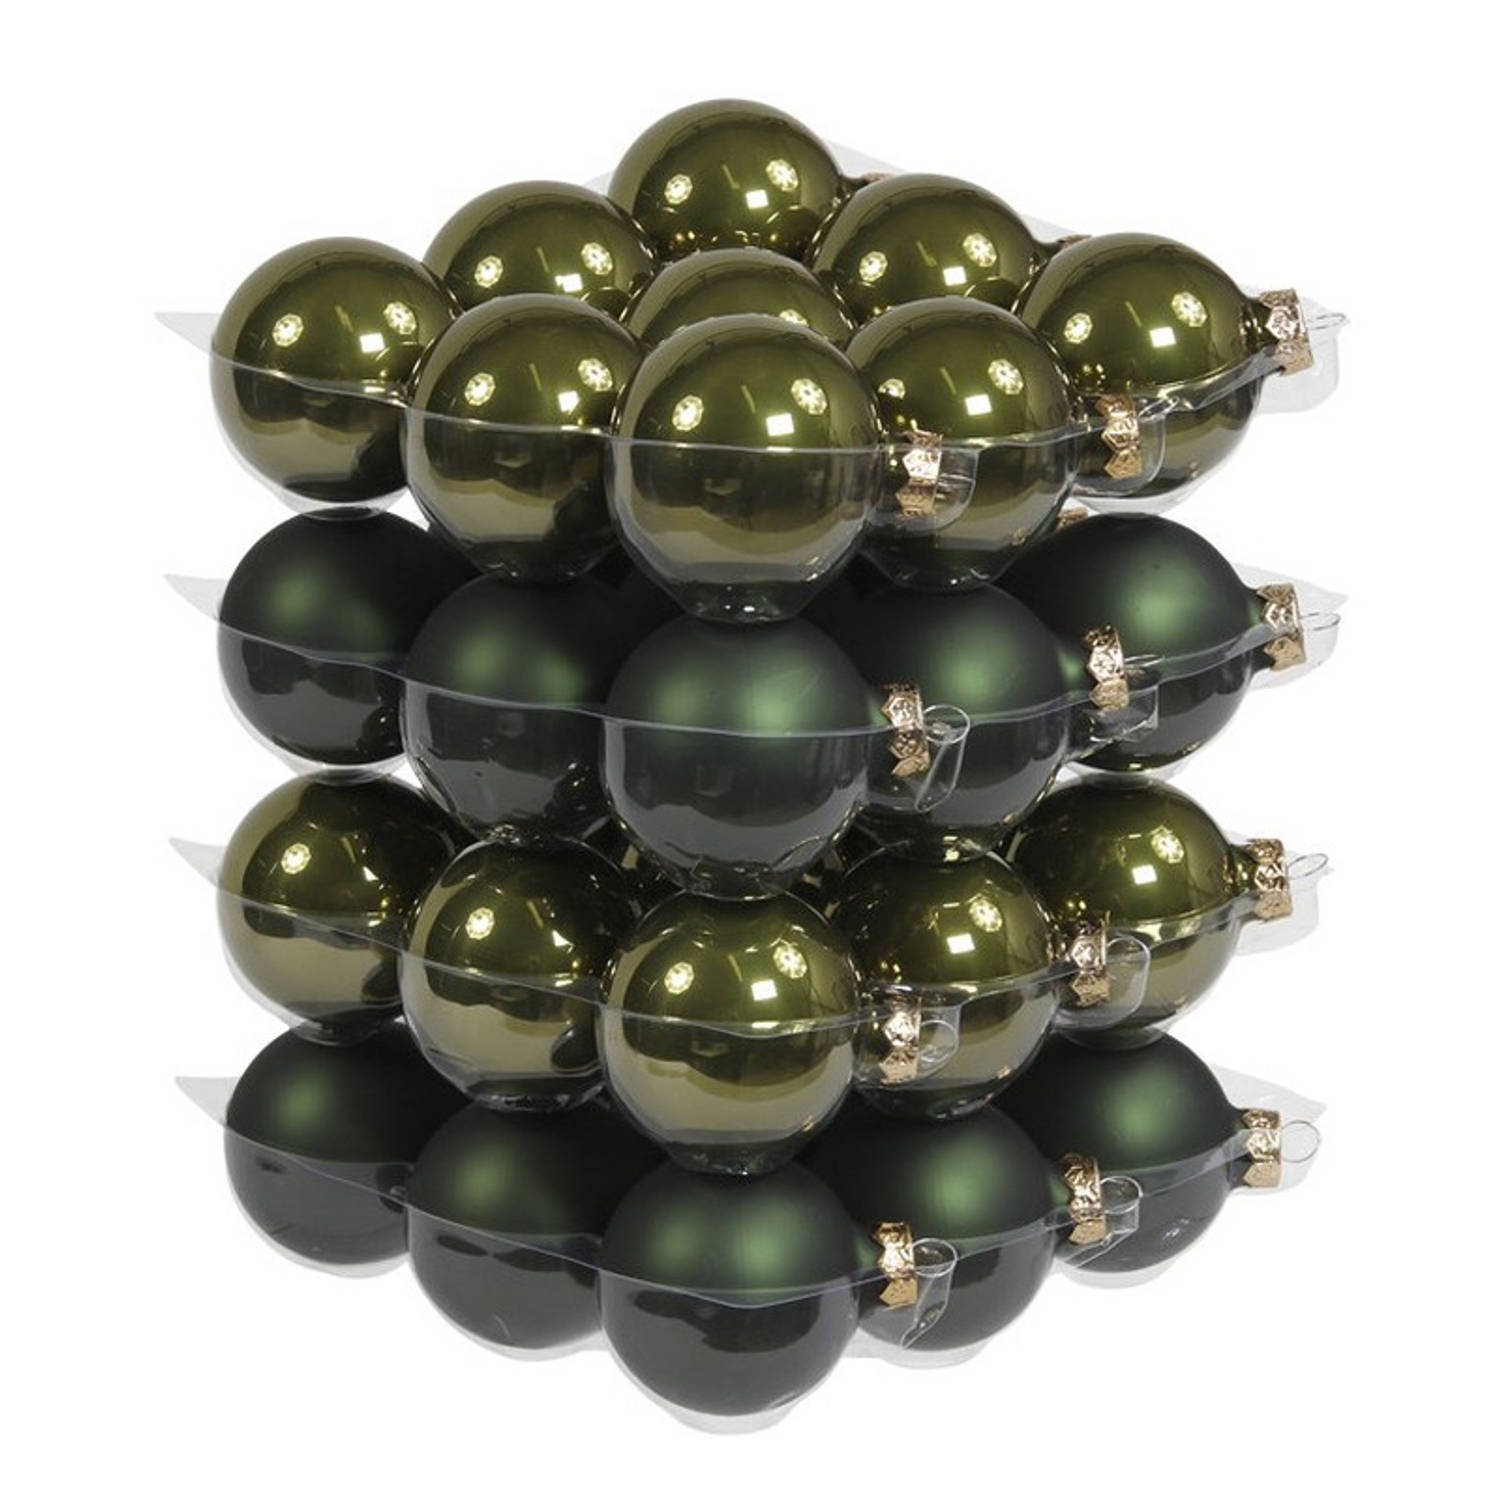 rijkdom heelal Gastvrijheid 36x Donker olijf groene glazen kerstballen 6 cm - mat/glans -  Kerstboomversiering donker olijf mat en glanzend | Blokker